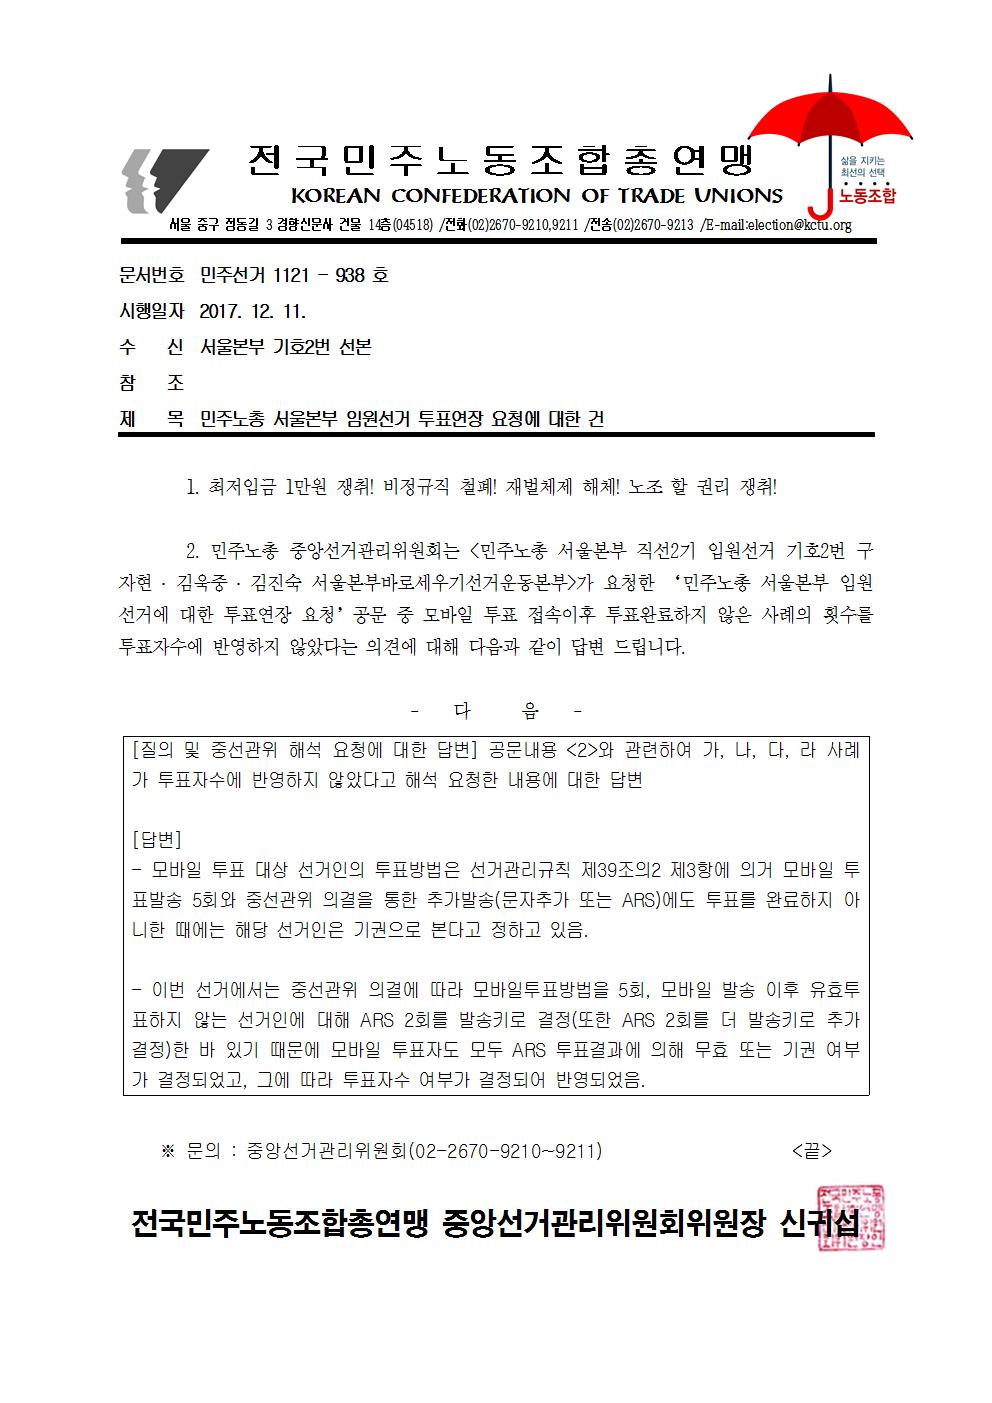 1211 서울본부 기호2번 투표연장 요청에 대한 답변001.jpg